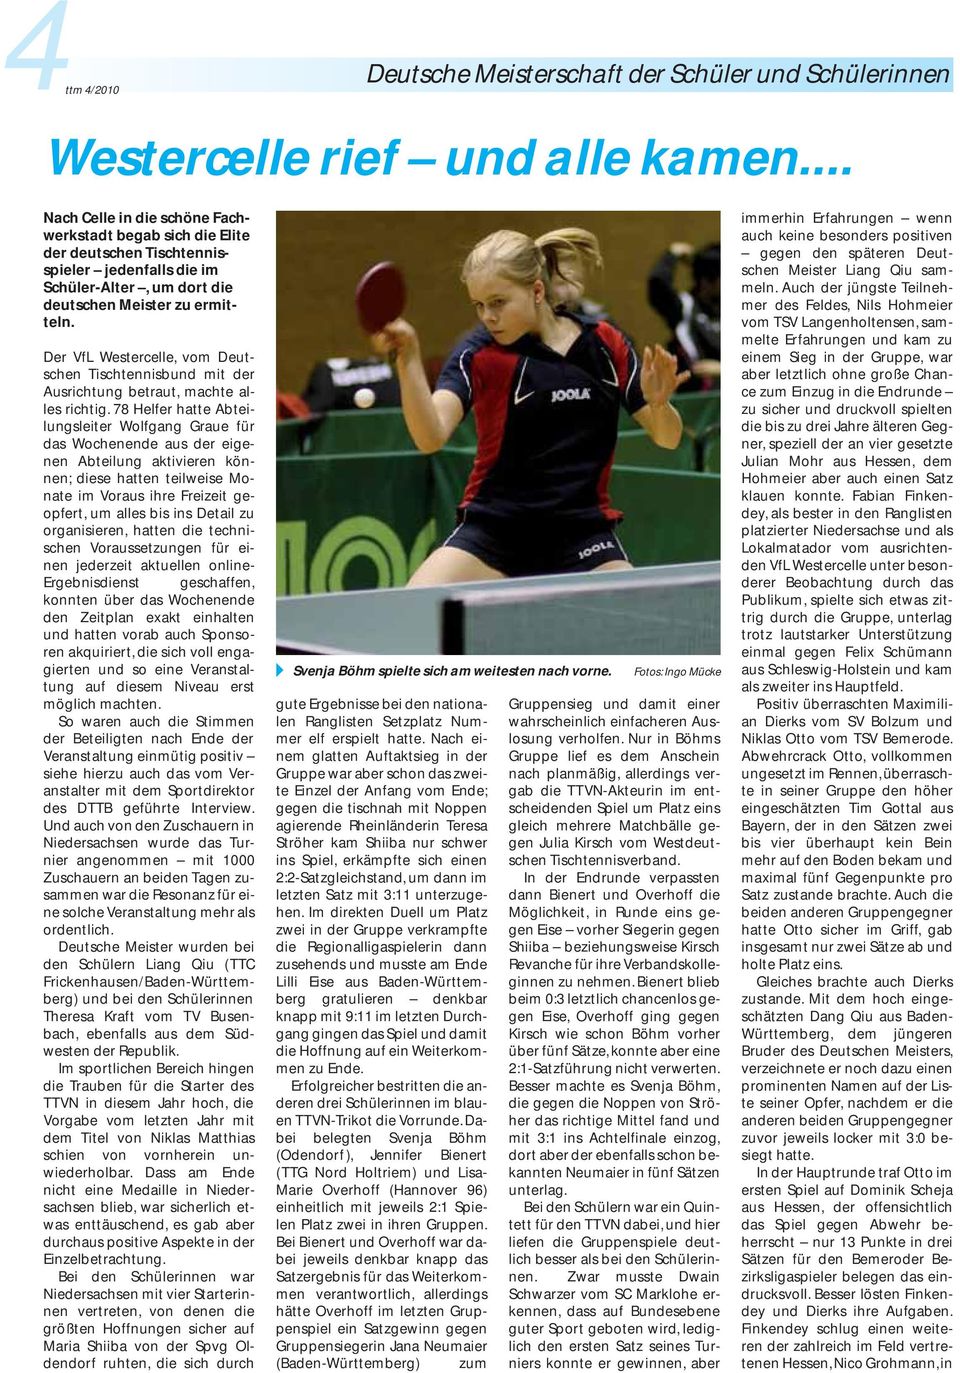 Der VfL Westercelle, vom Deutschen Tischtennisbund mit der Ausrichtung betraut, machte alles richtig.